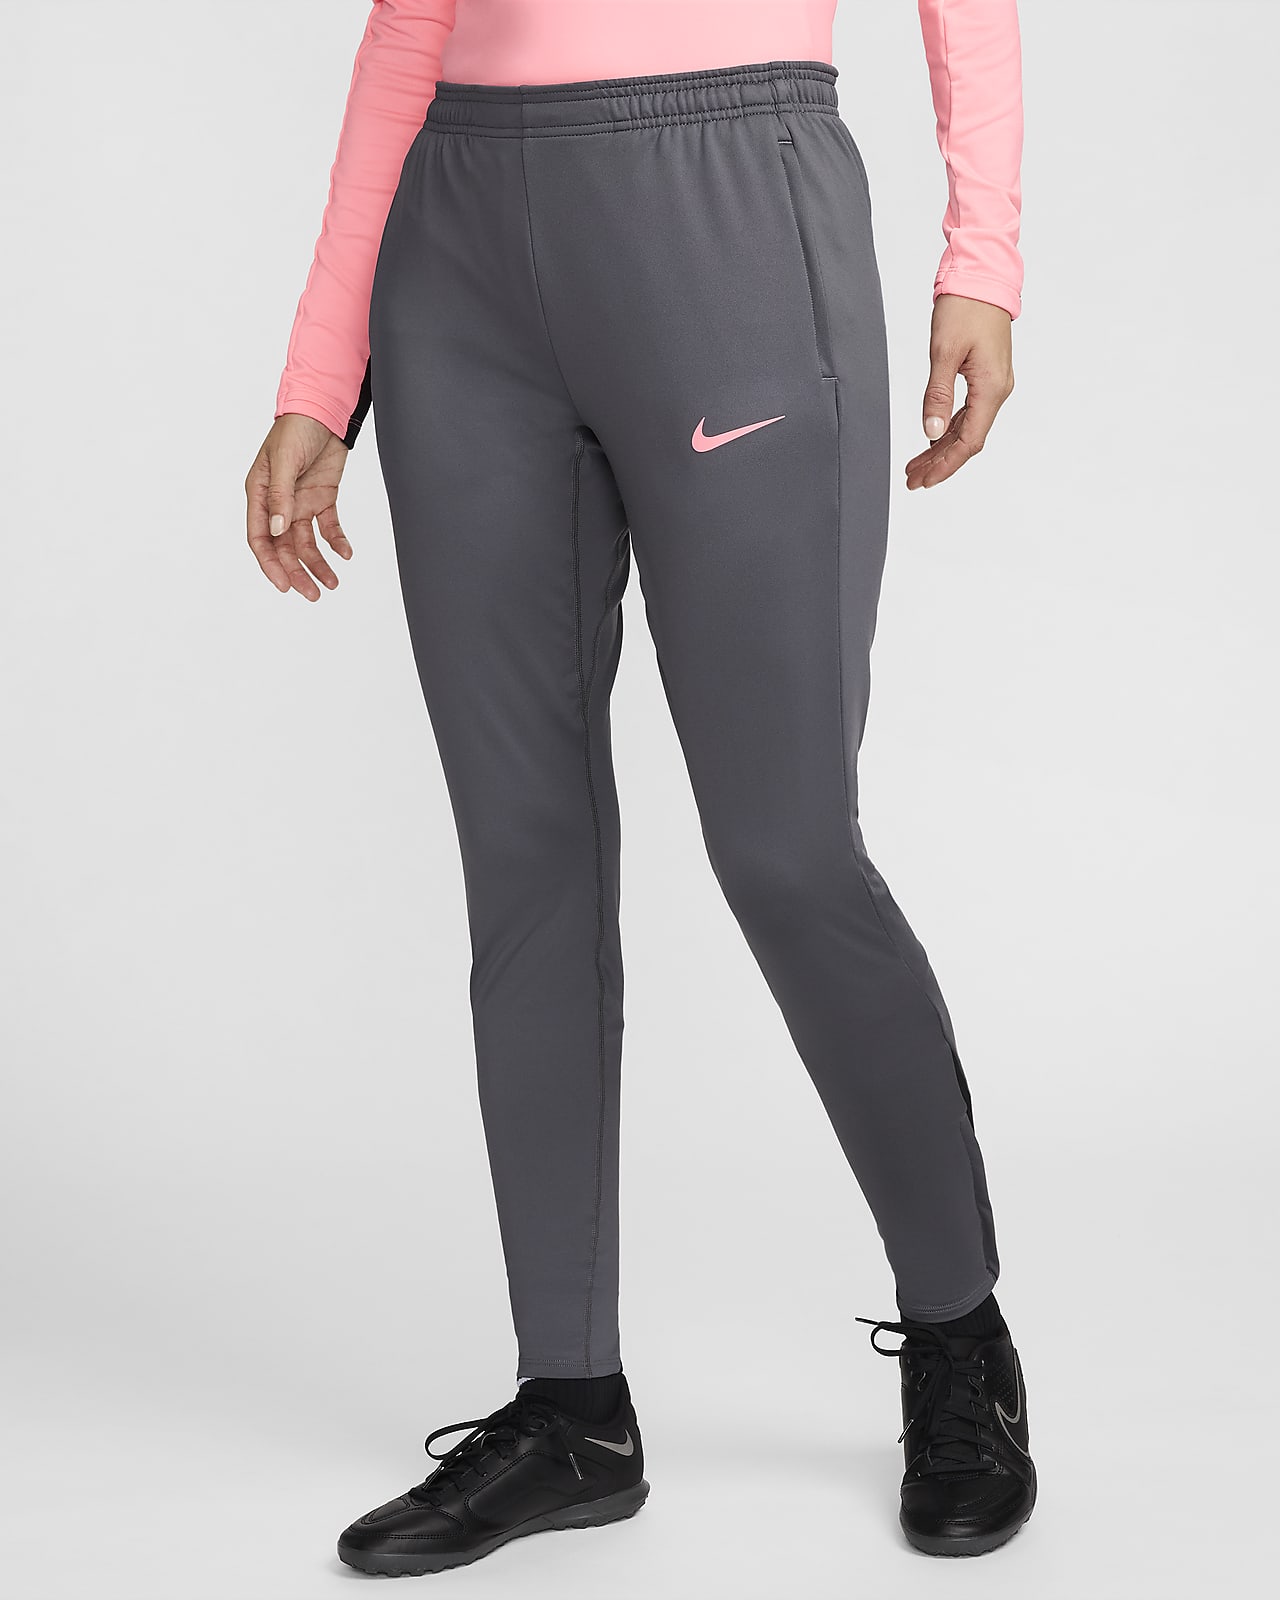 Damskie spodnie piłkarskie Dri-FIT Nike Strike